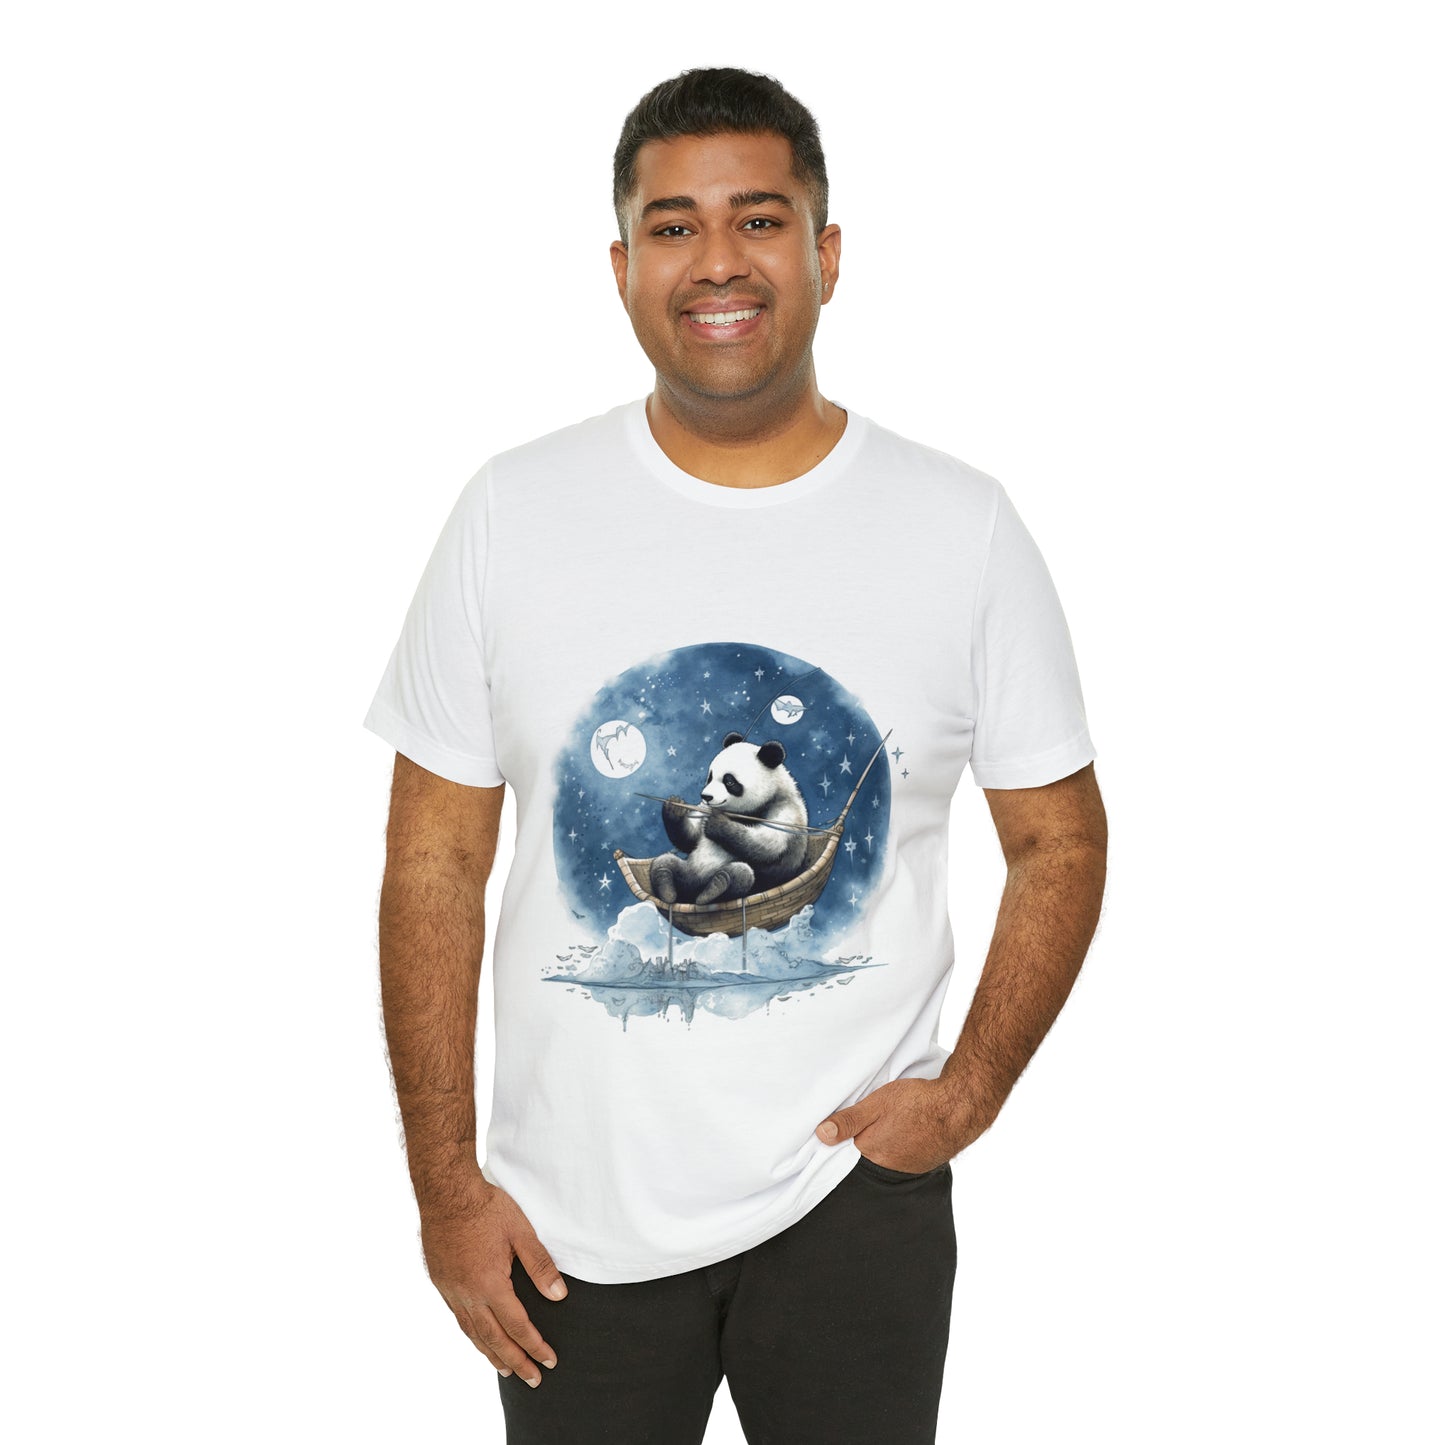 "Dreamy Panda" Lunar Fishing Tee